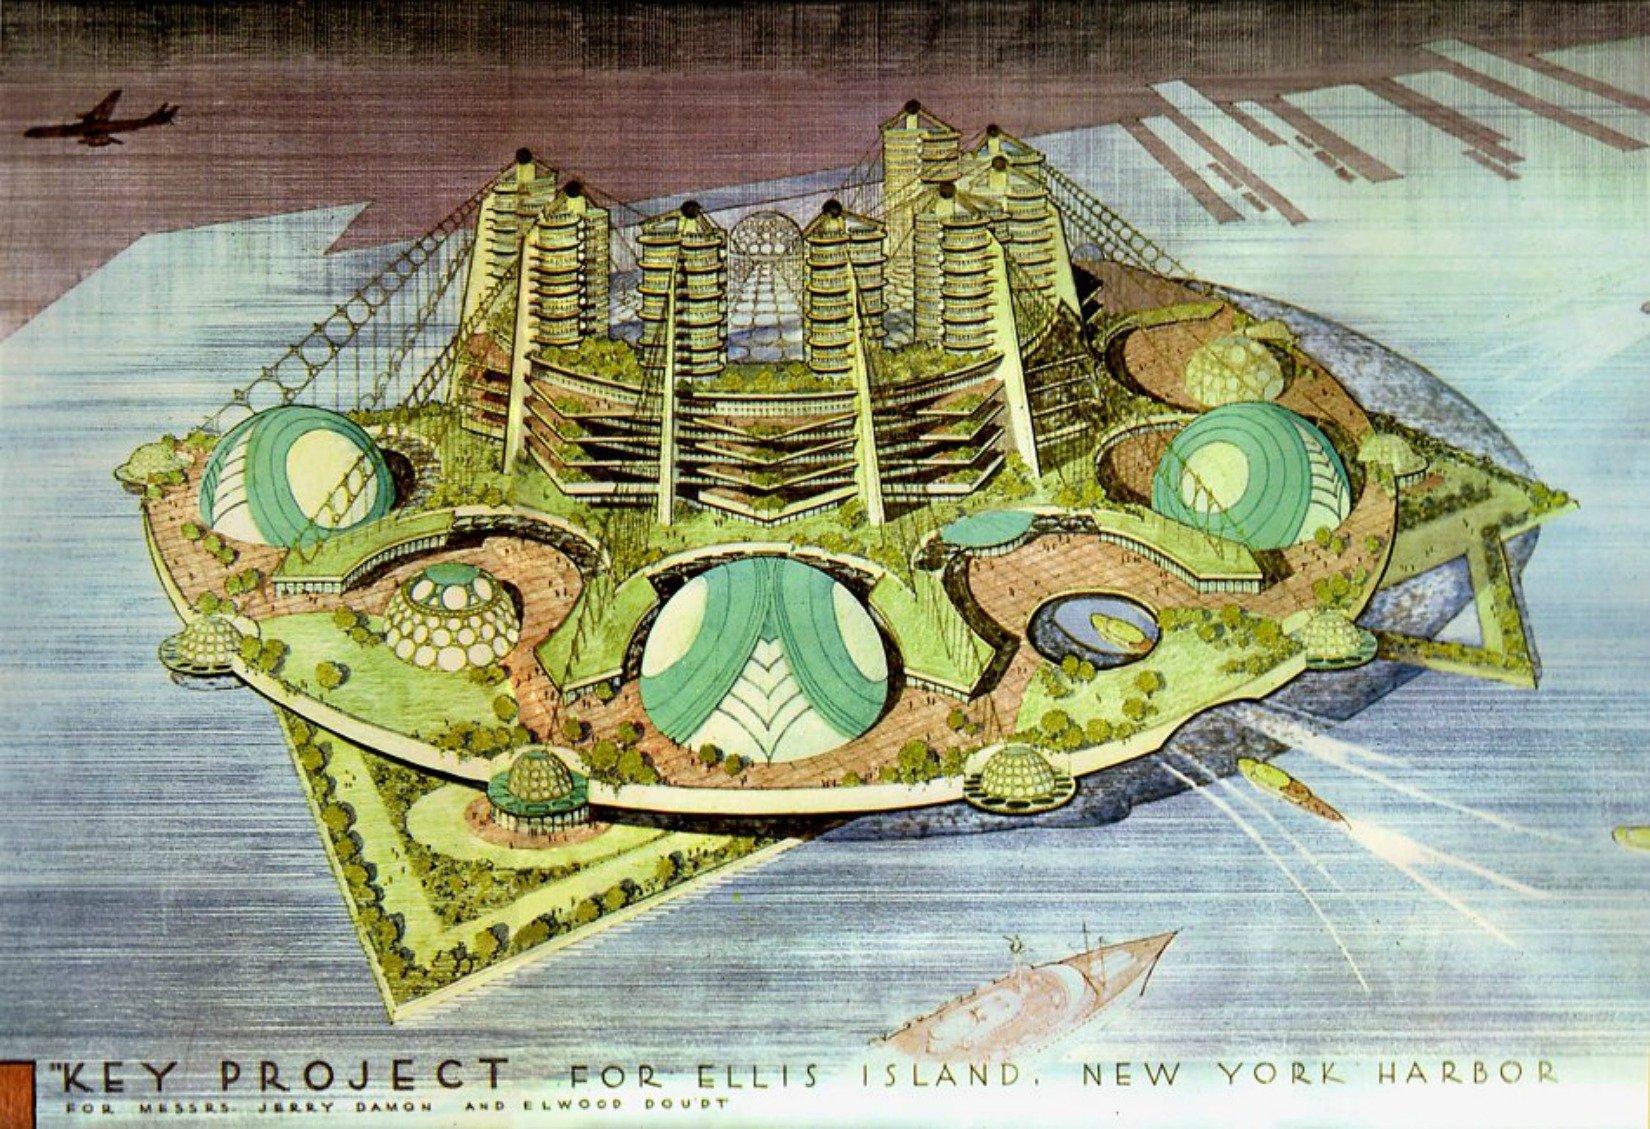 Sketch of future plan for Ellis Island by Frank Lloyd Wright